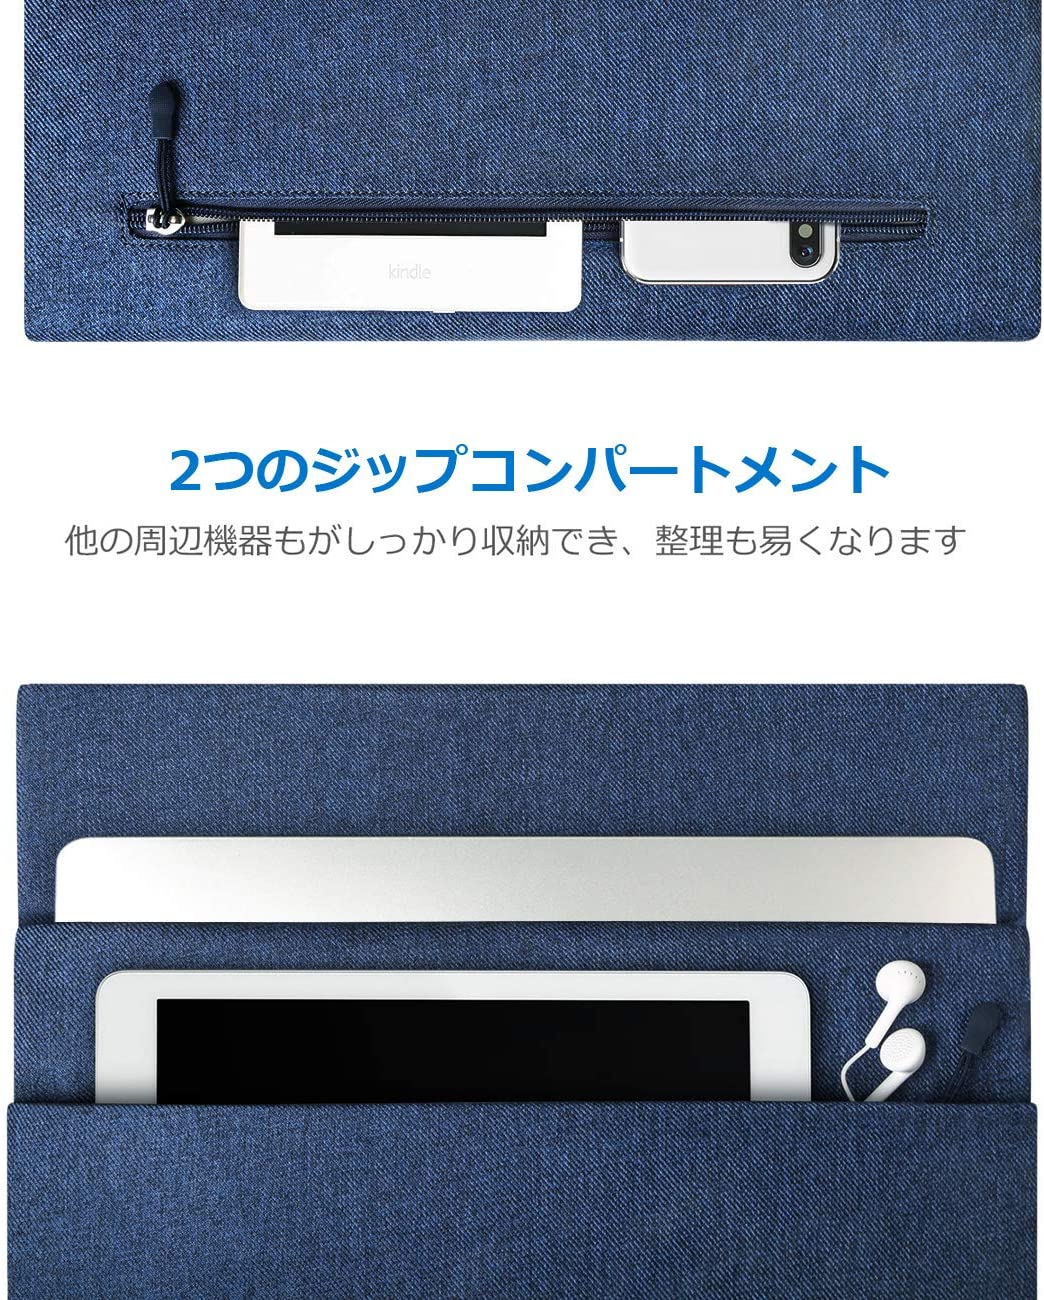 13-13.3インチMacBook Pro /Air/Surface Laptop ラップトップスリーブ LB01003，blue - Inateckバックパックジャパン